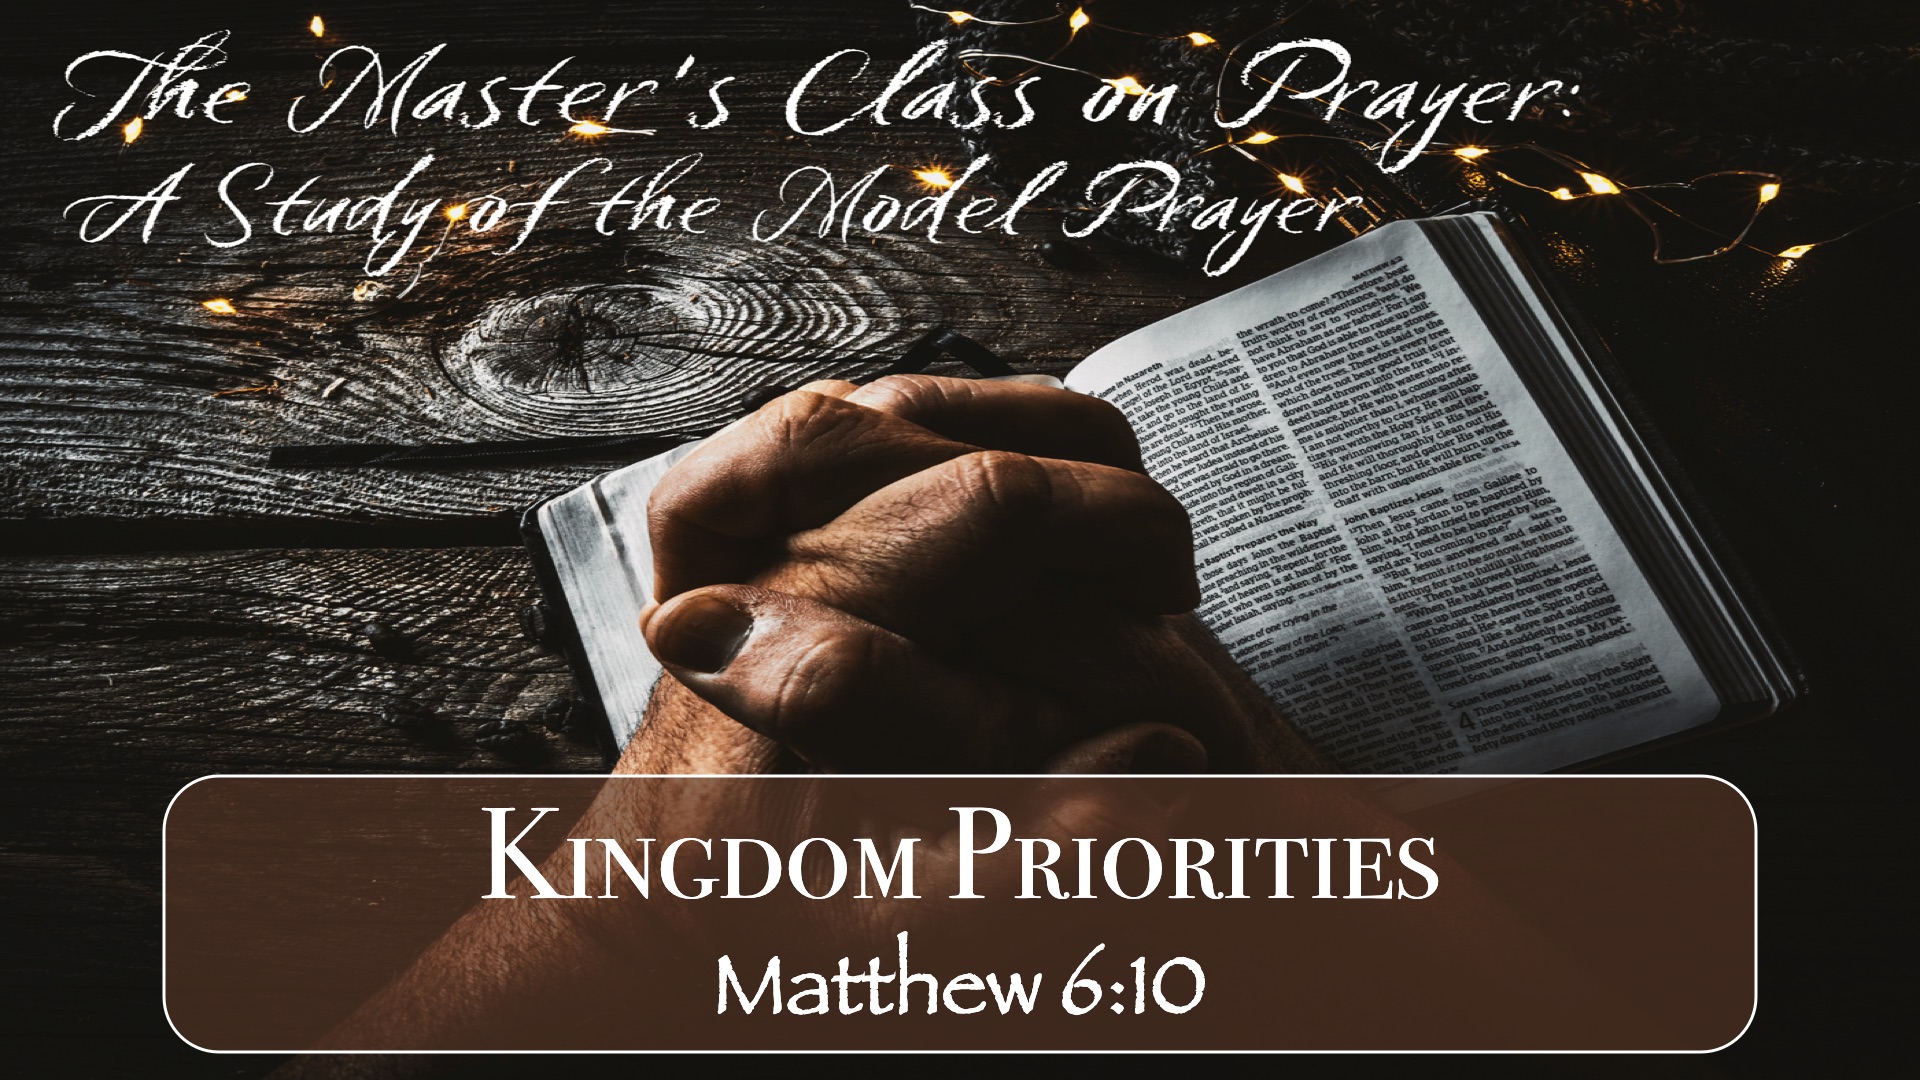 “Master’s Class on Prayer – Kingdom Priorities”